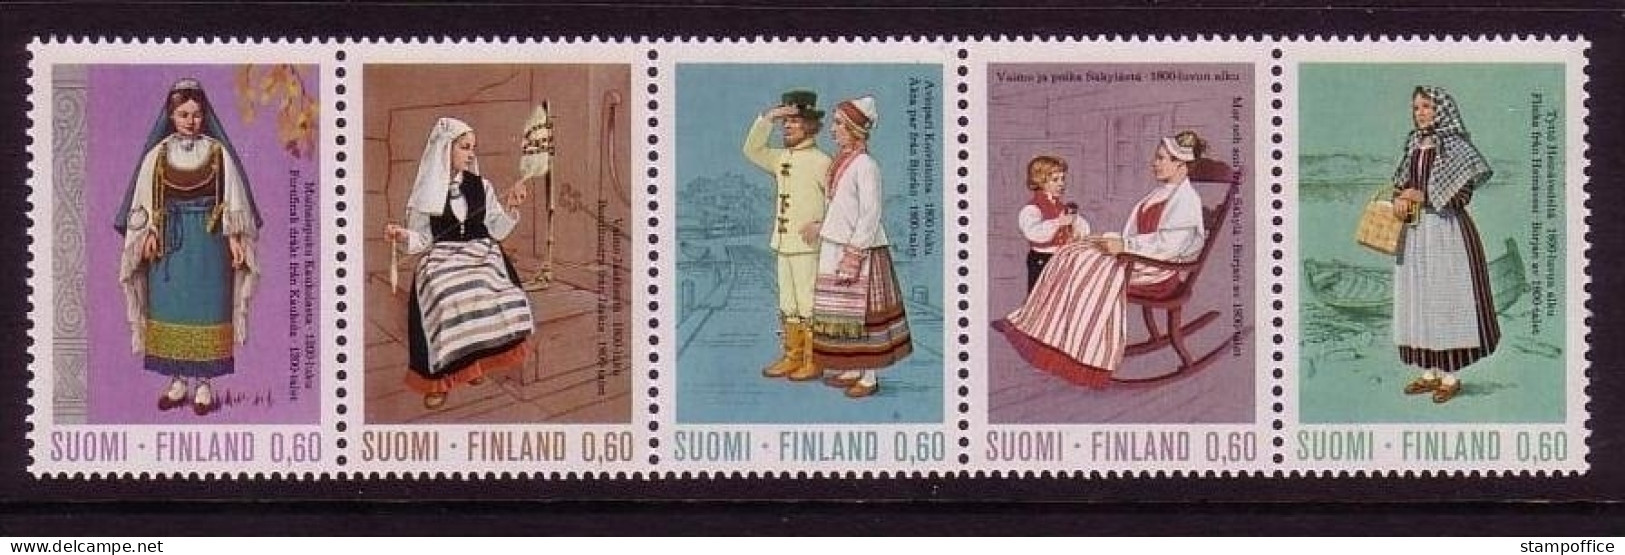 FINNLAND MI-NR. 733-737 POSTFRISCH(MINT) 5er Streifen Gefaltet - TRACHTEN 1973 - Unused Stamps